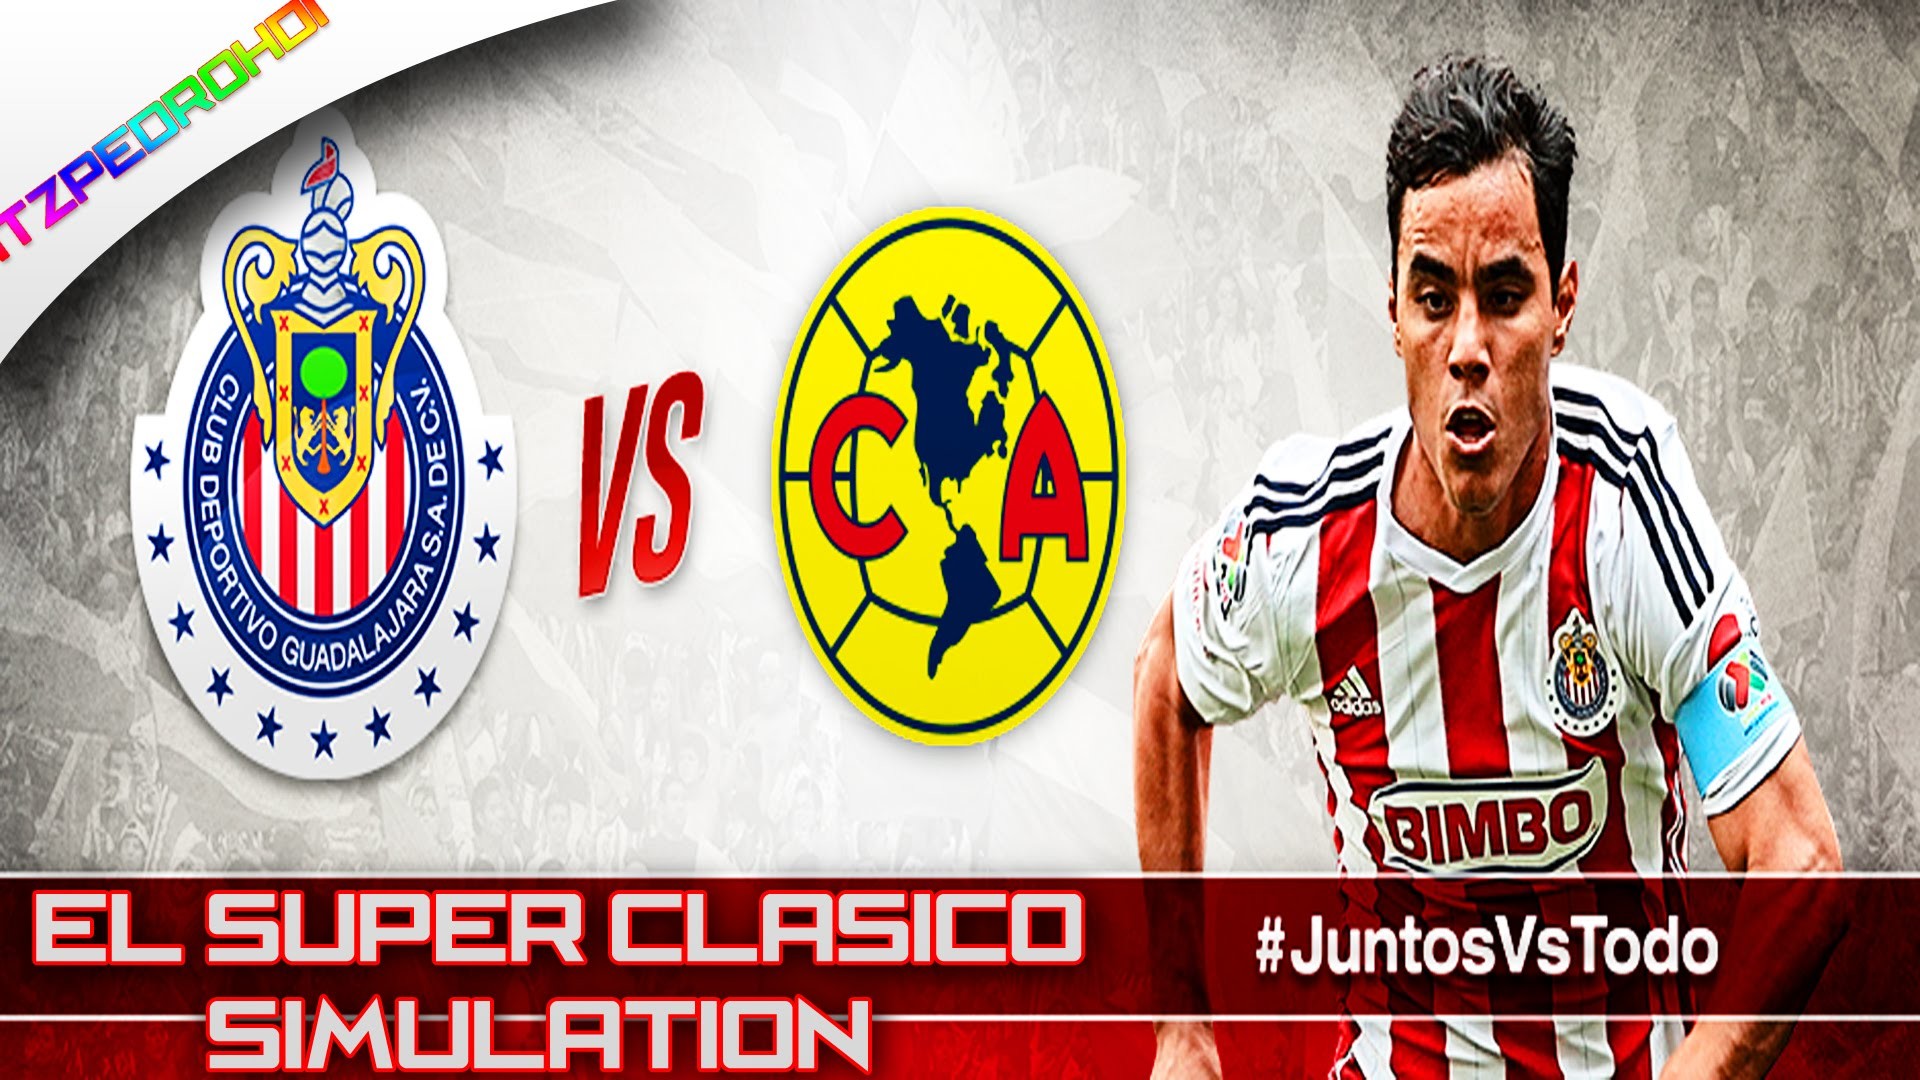 FIFA 15 Chivas Vs America Super Clasico Simulation Mexican Commentators